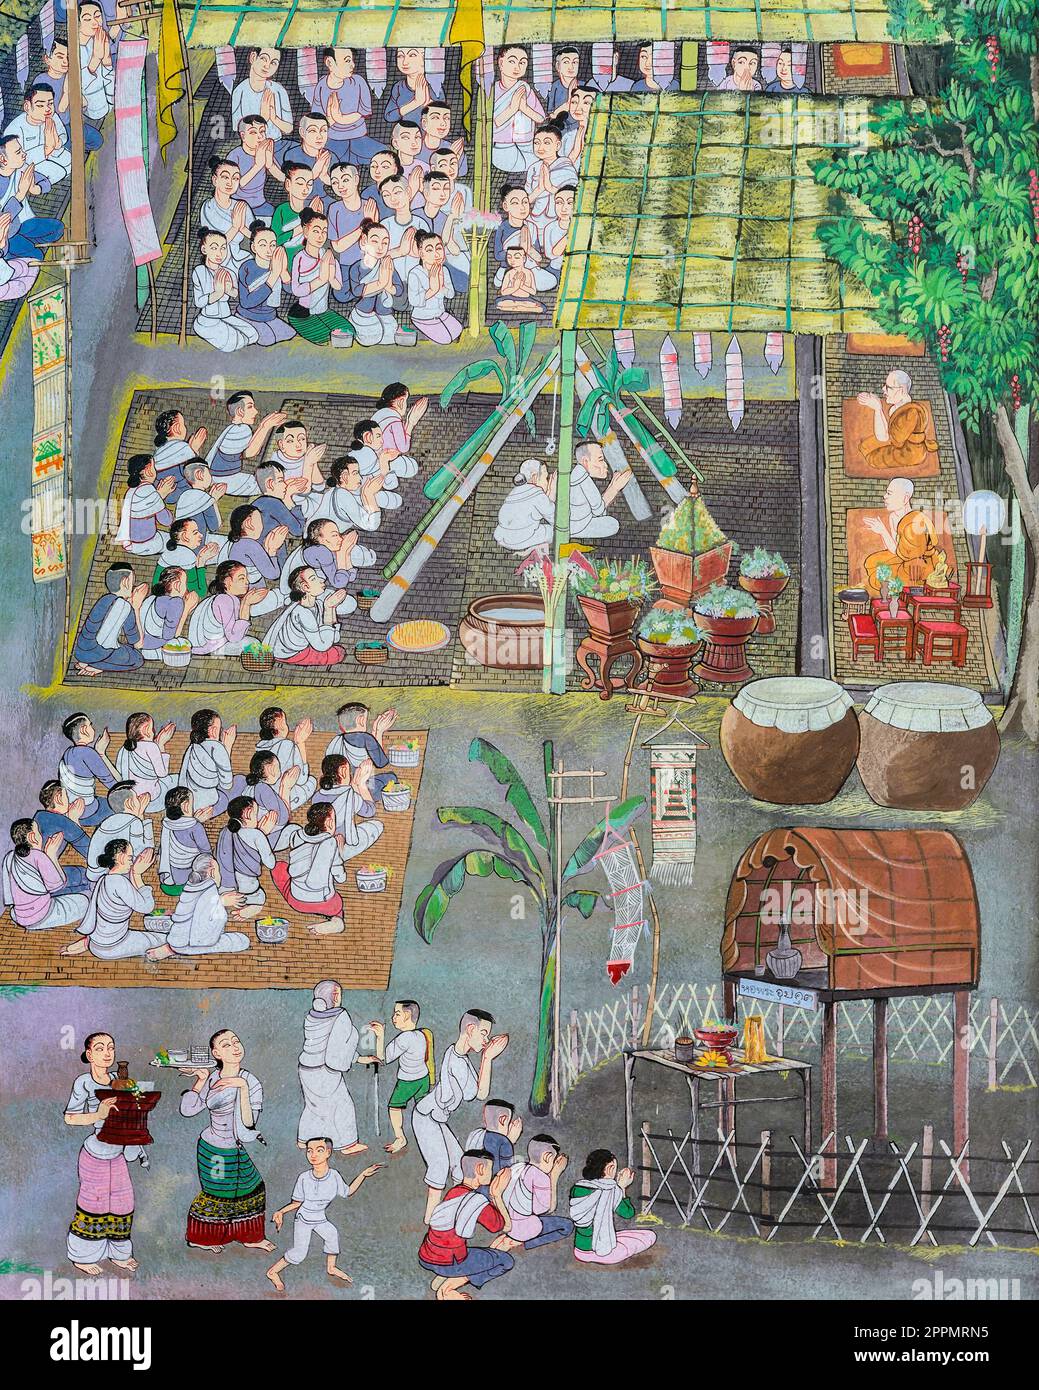 Antica pittura murale in stile Lanna Tailandese del festival buddista Foto Stock